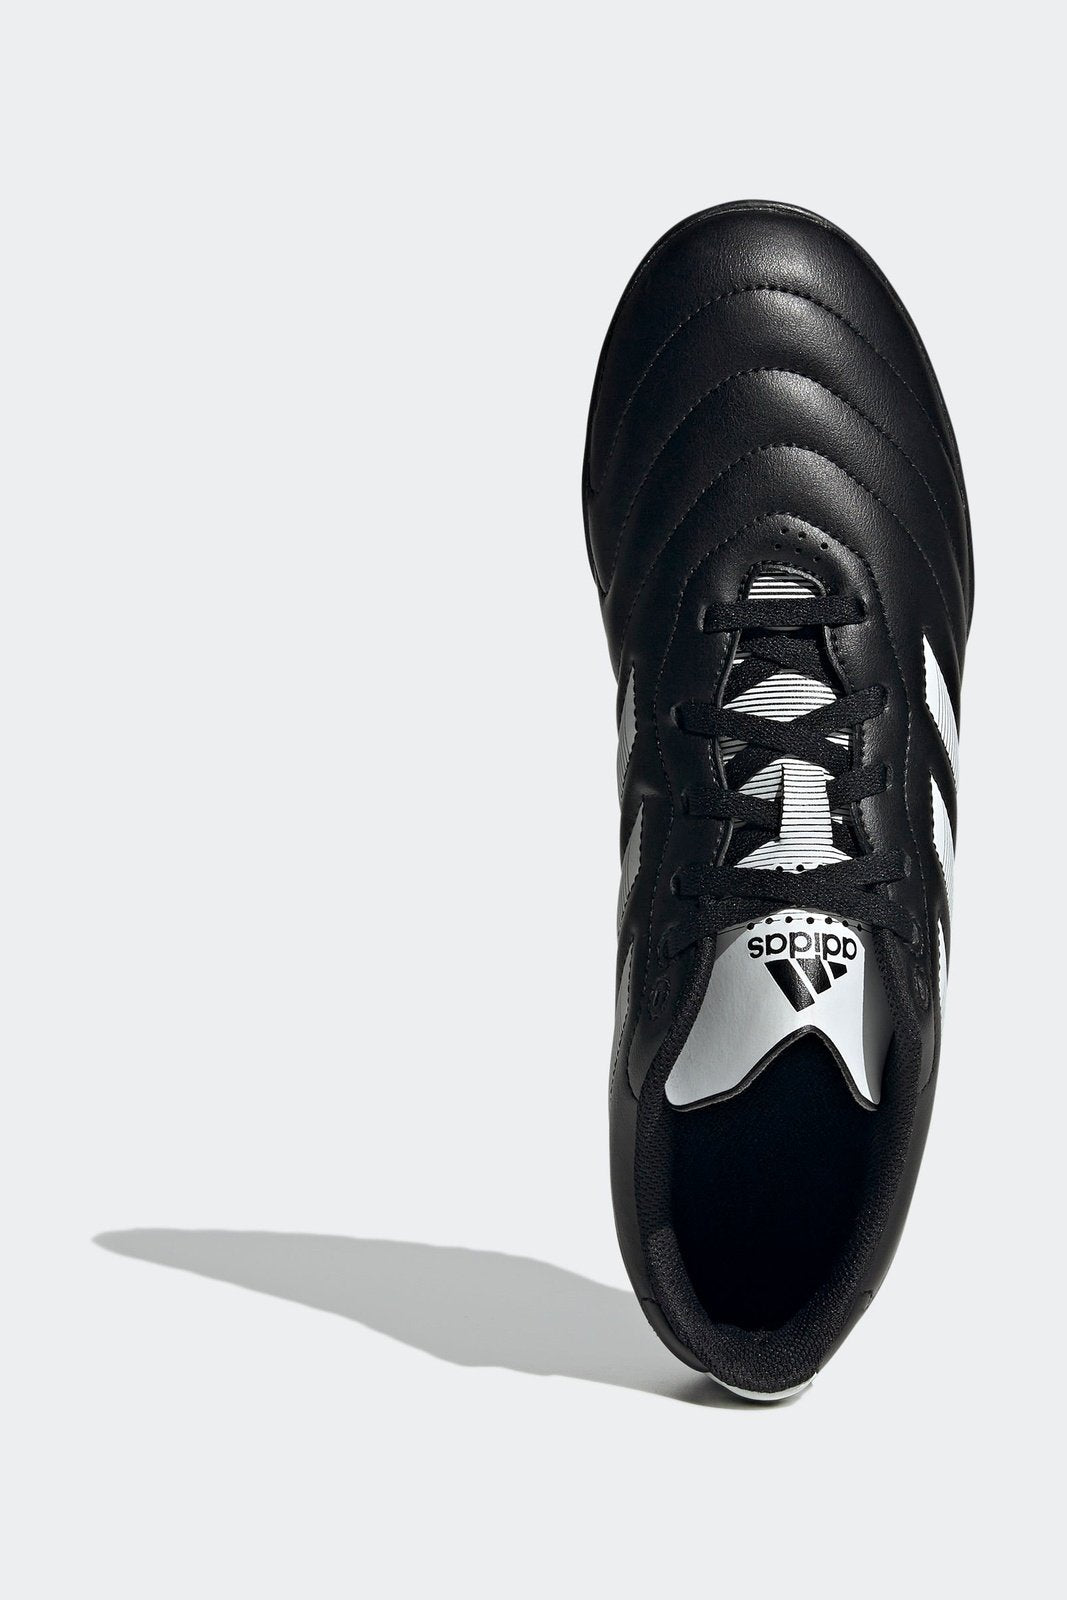 נעלי קטרגל לגברים  GOLETTO VIII TURF בצבע שחור